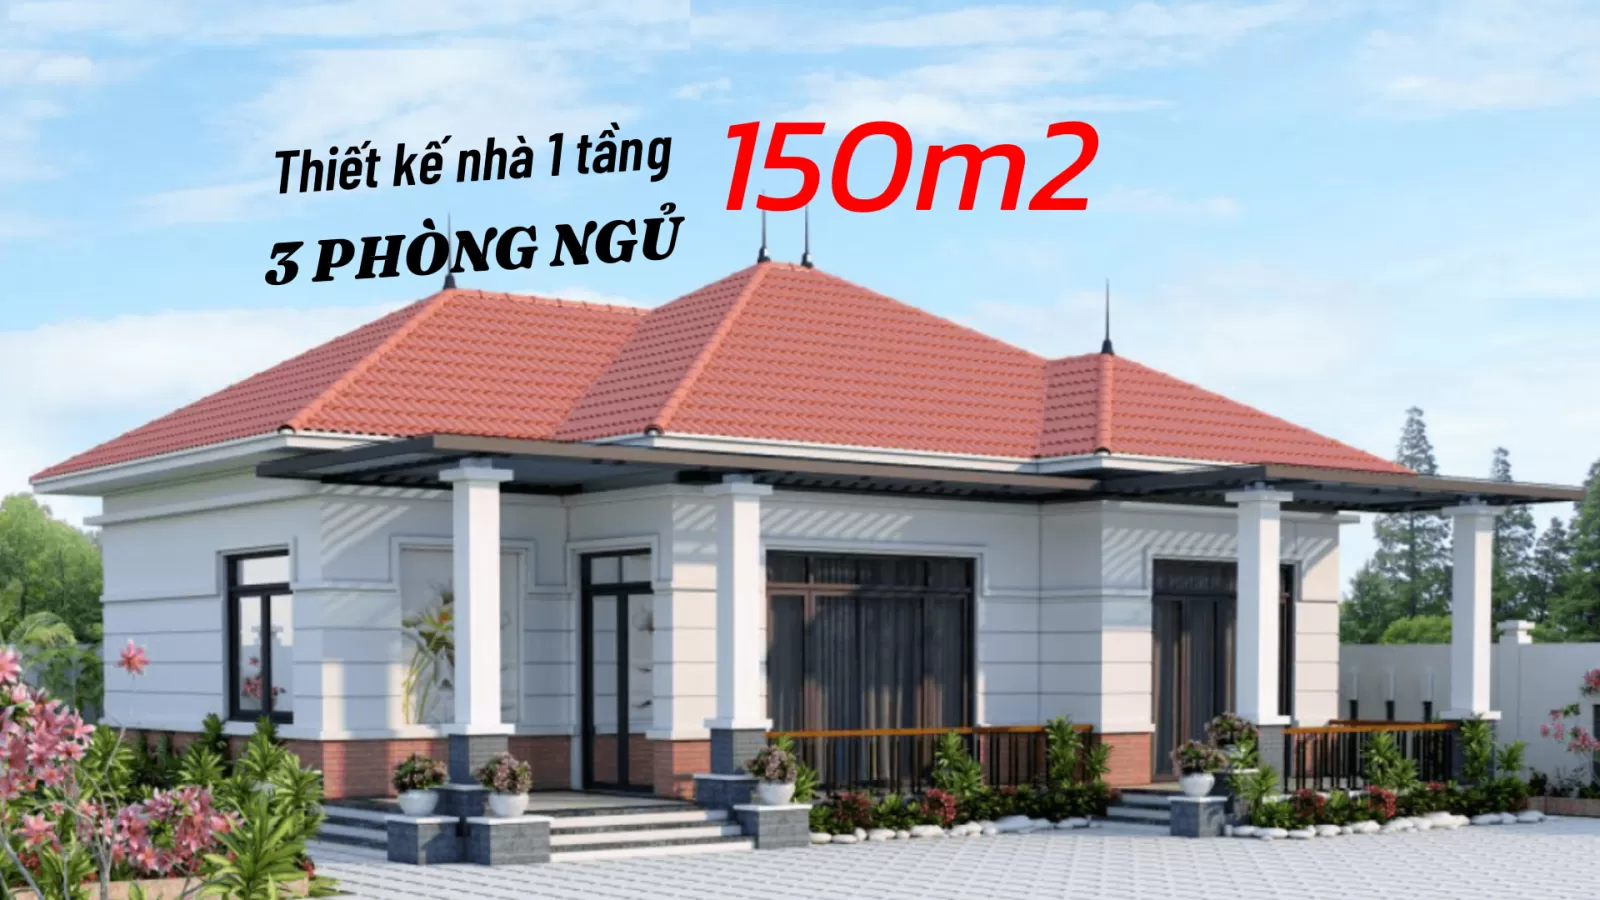 Gợi Ý Mẫu Nhà Cấp 4 Nông Thôn 3 Phòng Ngủ Đơn Giản Đẹp | Kiến Trúc Nhà Việt  - YouTube